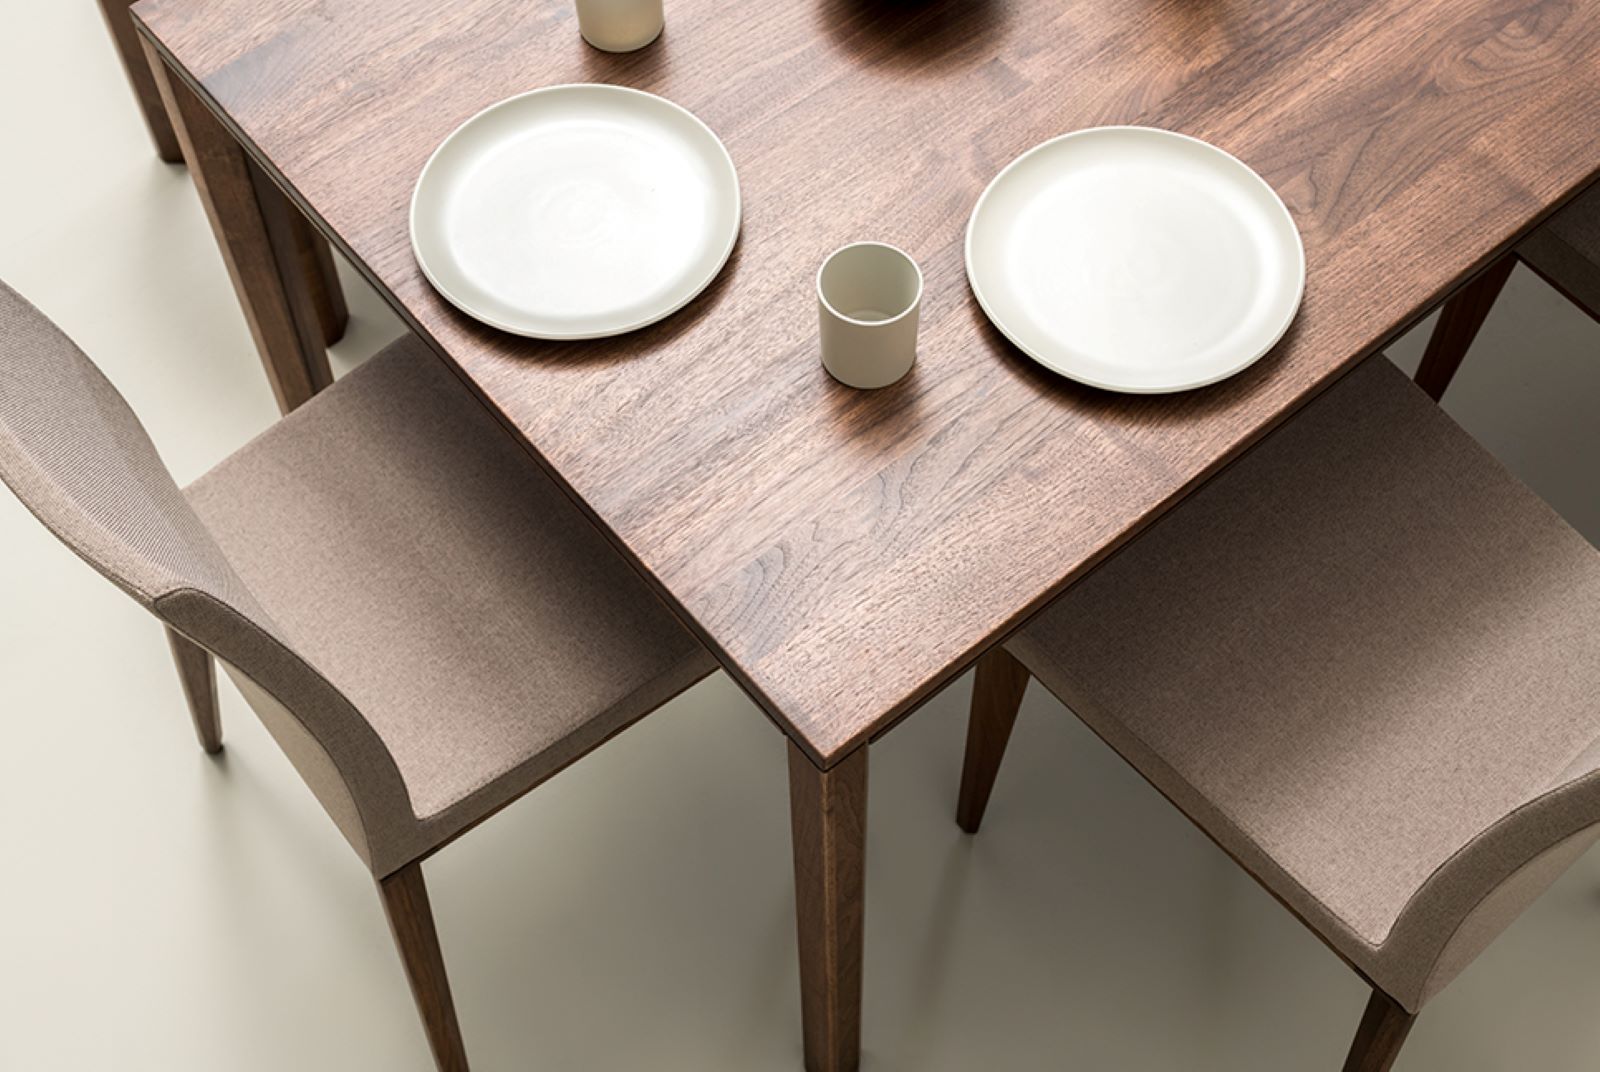 Detailansicht der Tischplatte des RABA Esstisches aus Nussbaumholz mit sichtbarer Maserung und gedecktem Geschirr